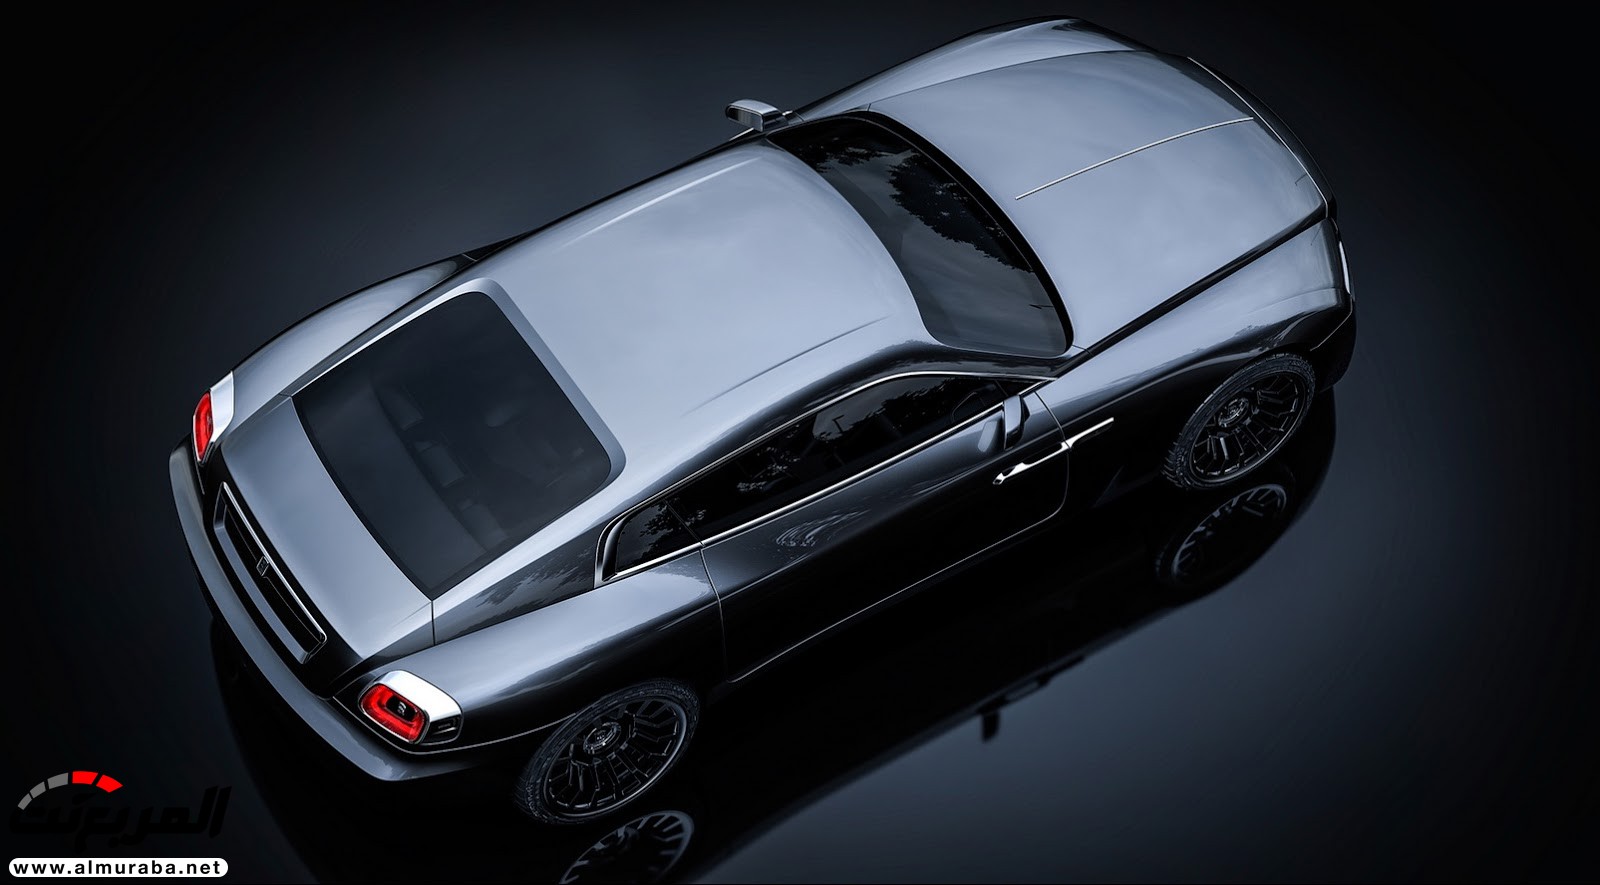 "صور افتراضية" لما يمكن أن تبدو عليه "رولز رويس" رايث كوبيه 2020 Rolls-Royce Wraith Coupe 68